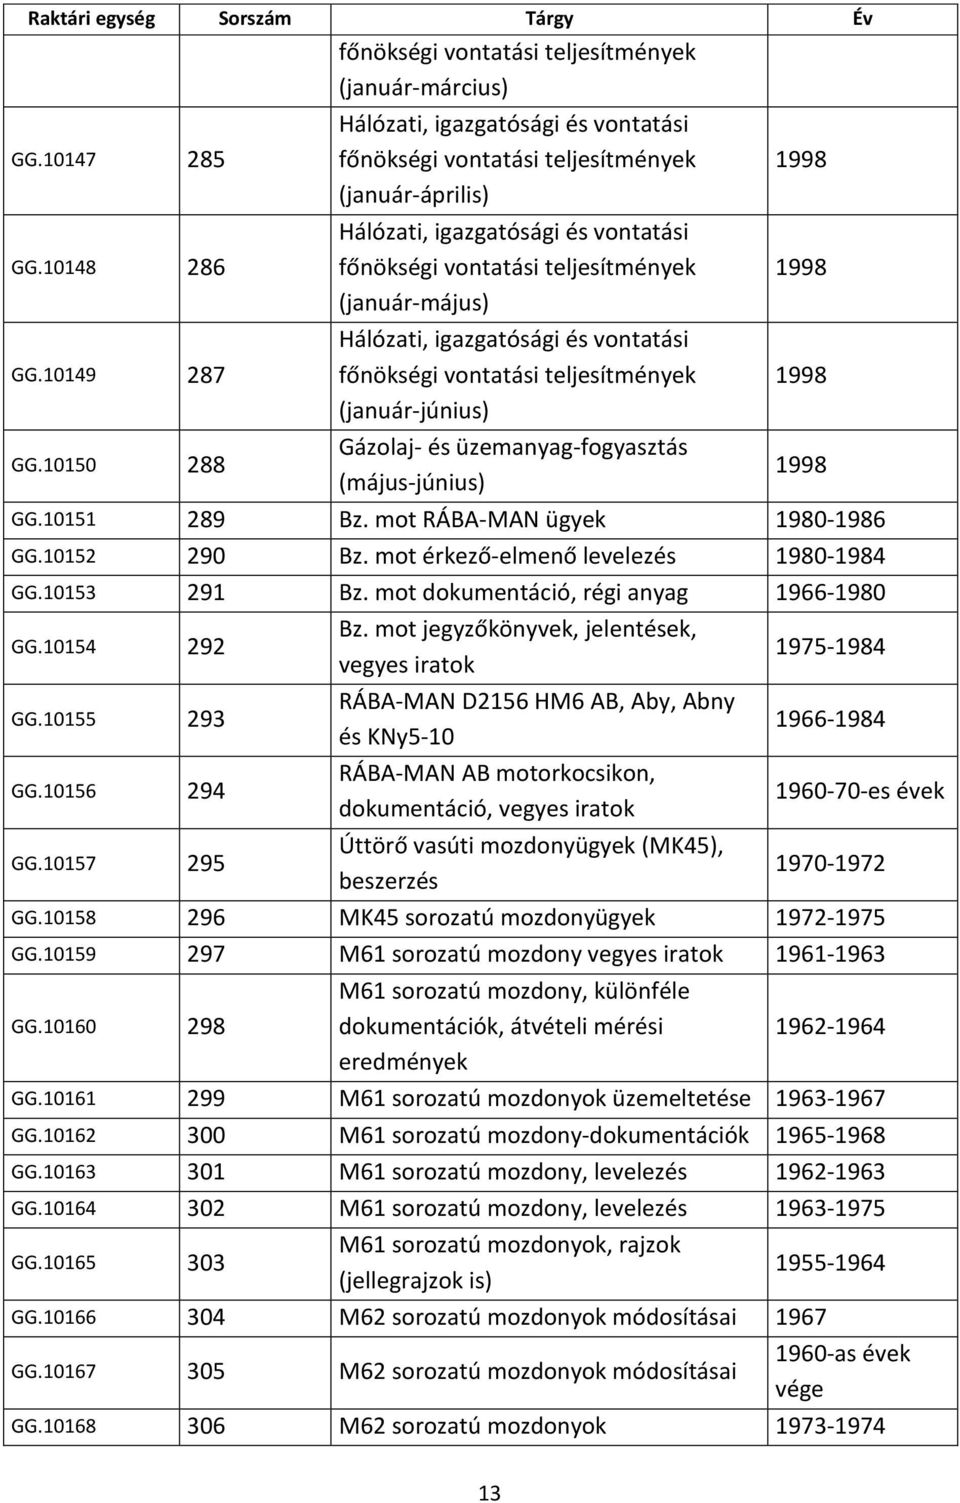 igazgatósági és vontatási főnökségi vontatási teljesítmények (január-június) Gázolaj- és üzemanyag-fogyasztás (május-június) 1998 1998 1998 1998 GG.10151 289 Bz. mot RÁBA-MAN ügyek 1980-1986 GG.